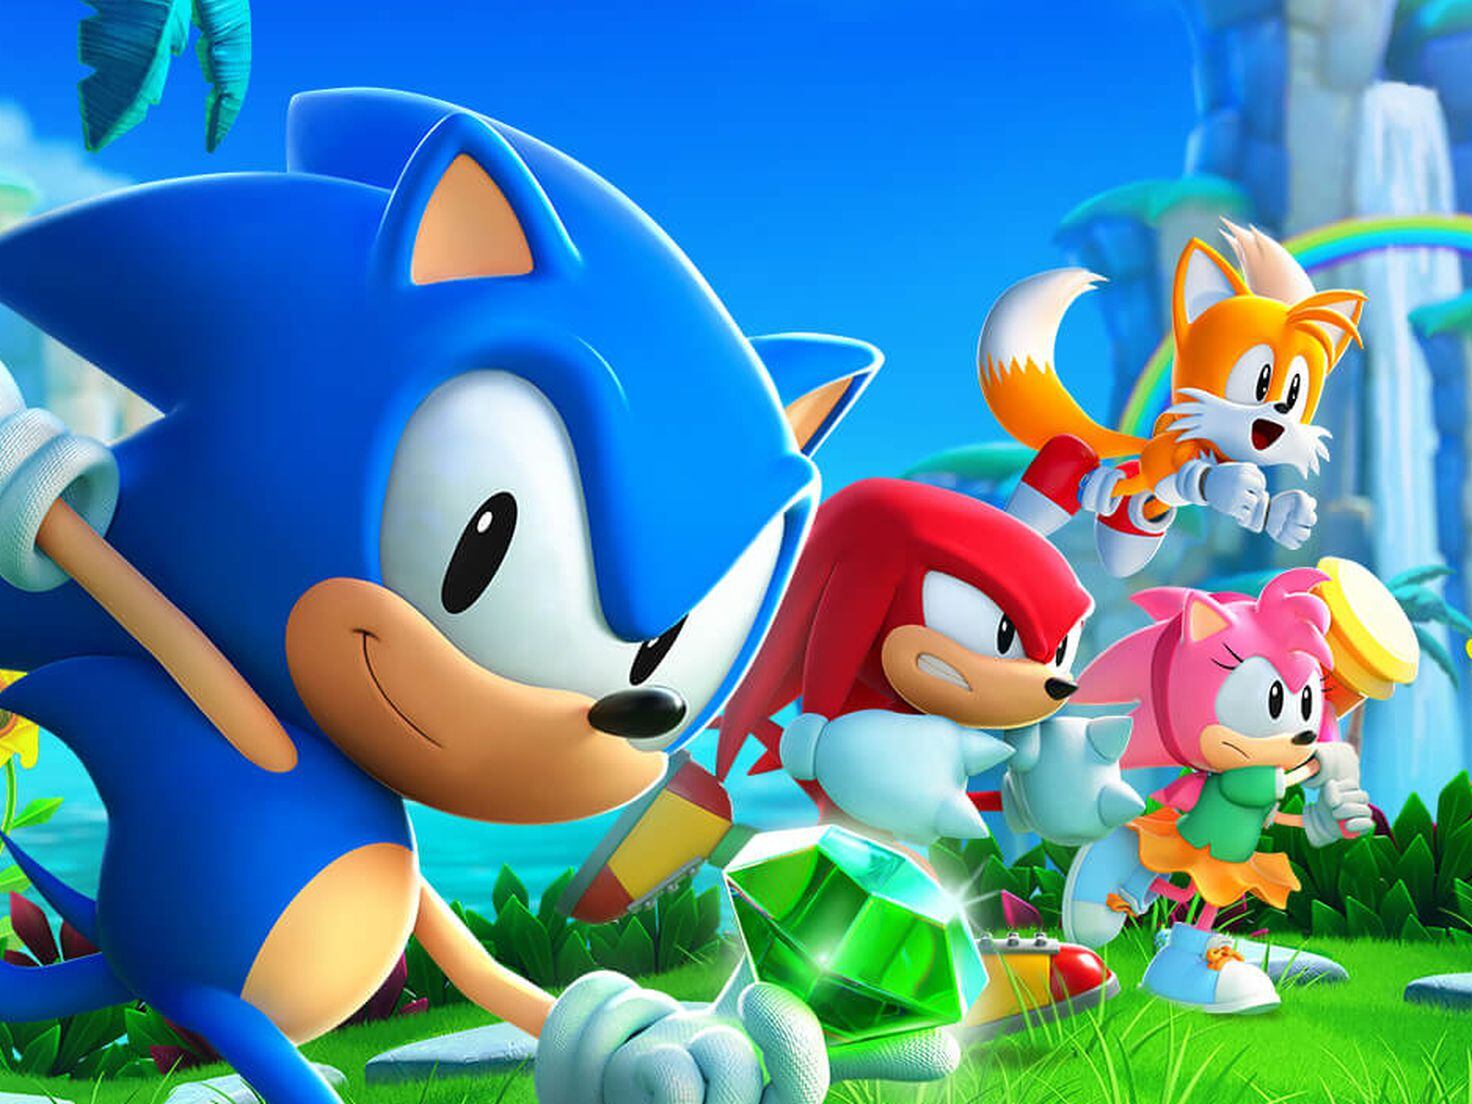 Preços baixos em Sonic the Hedgehog videogame Guias de Estratégia e cheats